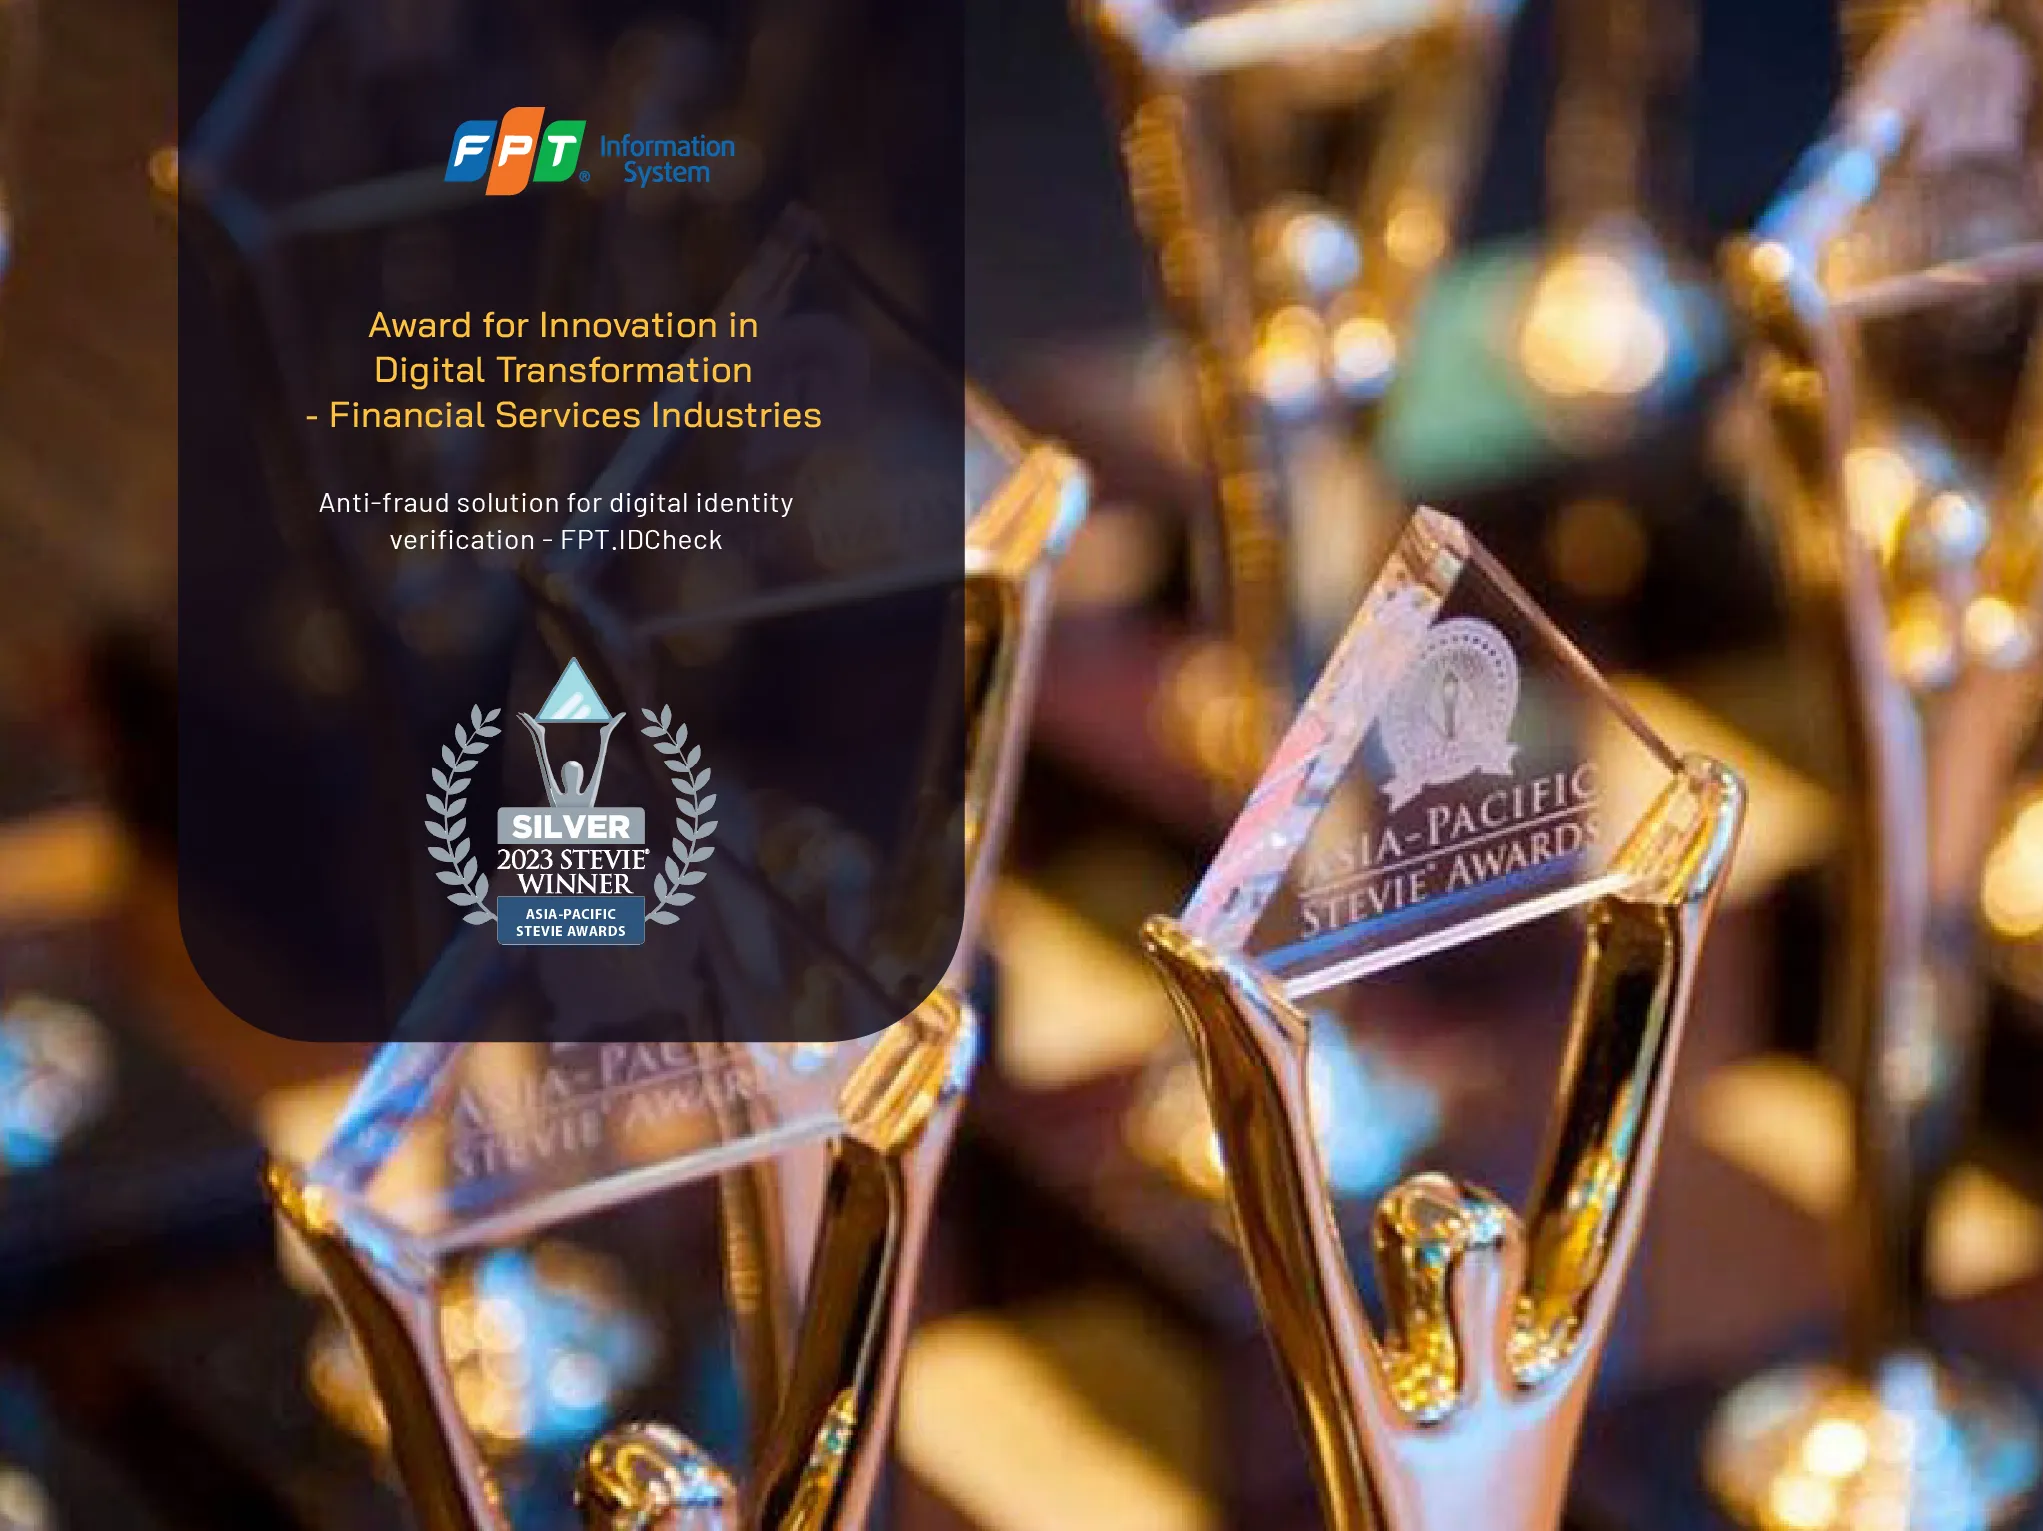 Asia-Pacific Stevie Awards 2023 vinh danh FPT về “những giá trị hạnh phúc” kiến tạo cho cộng đồng